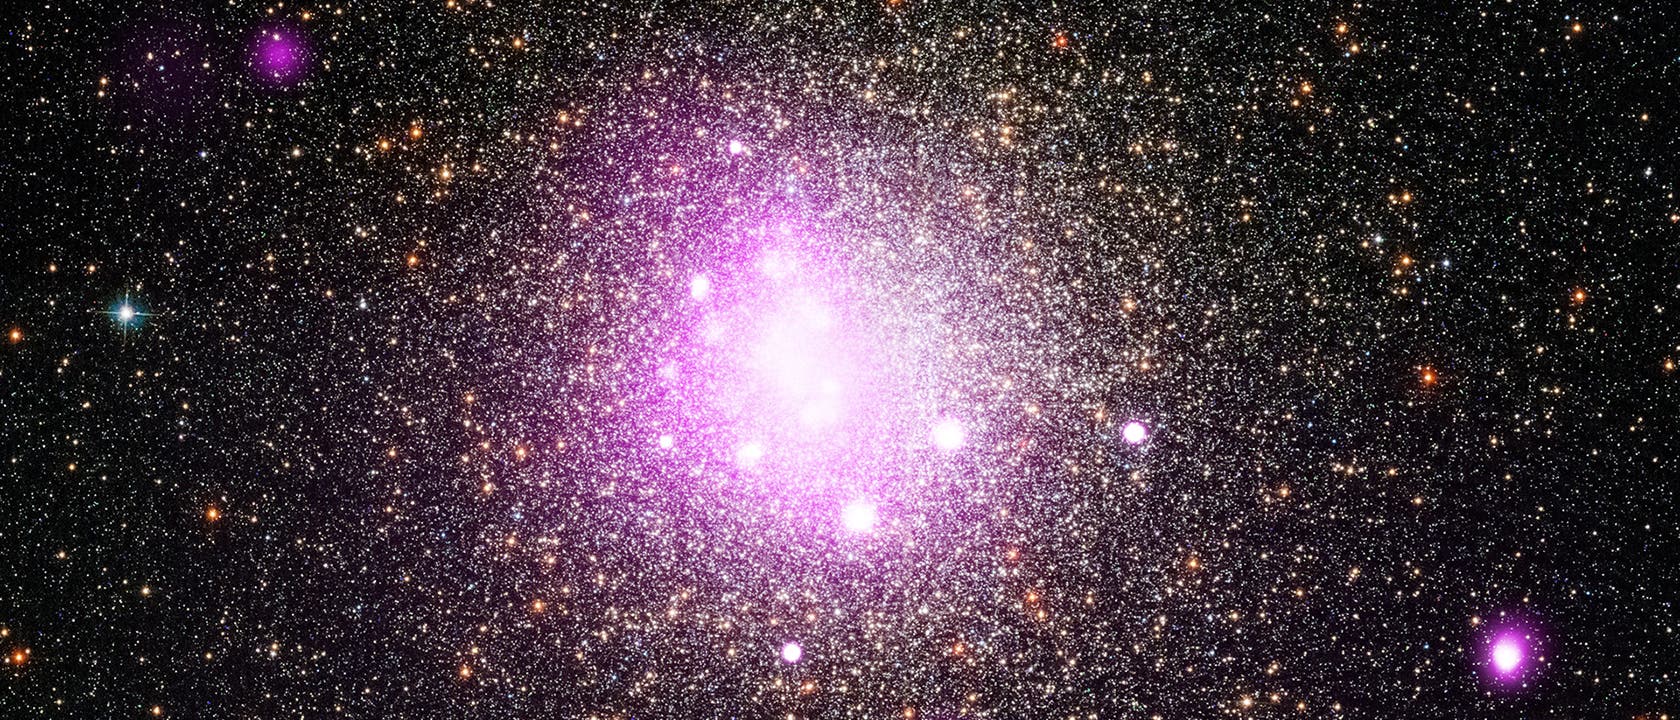 Kugelsternhaufen NGC 6388 - hier zerriss es einen Exoplaneten